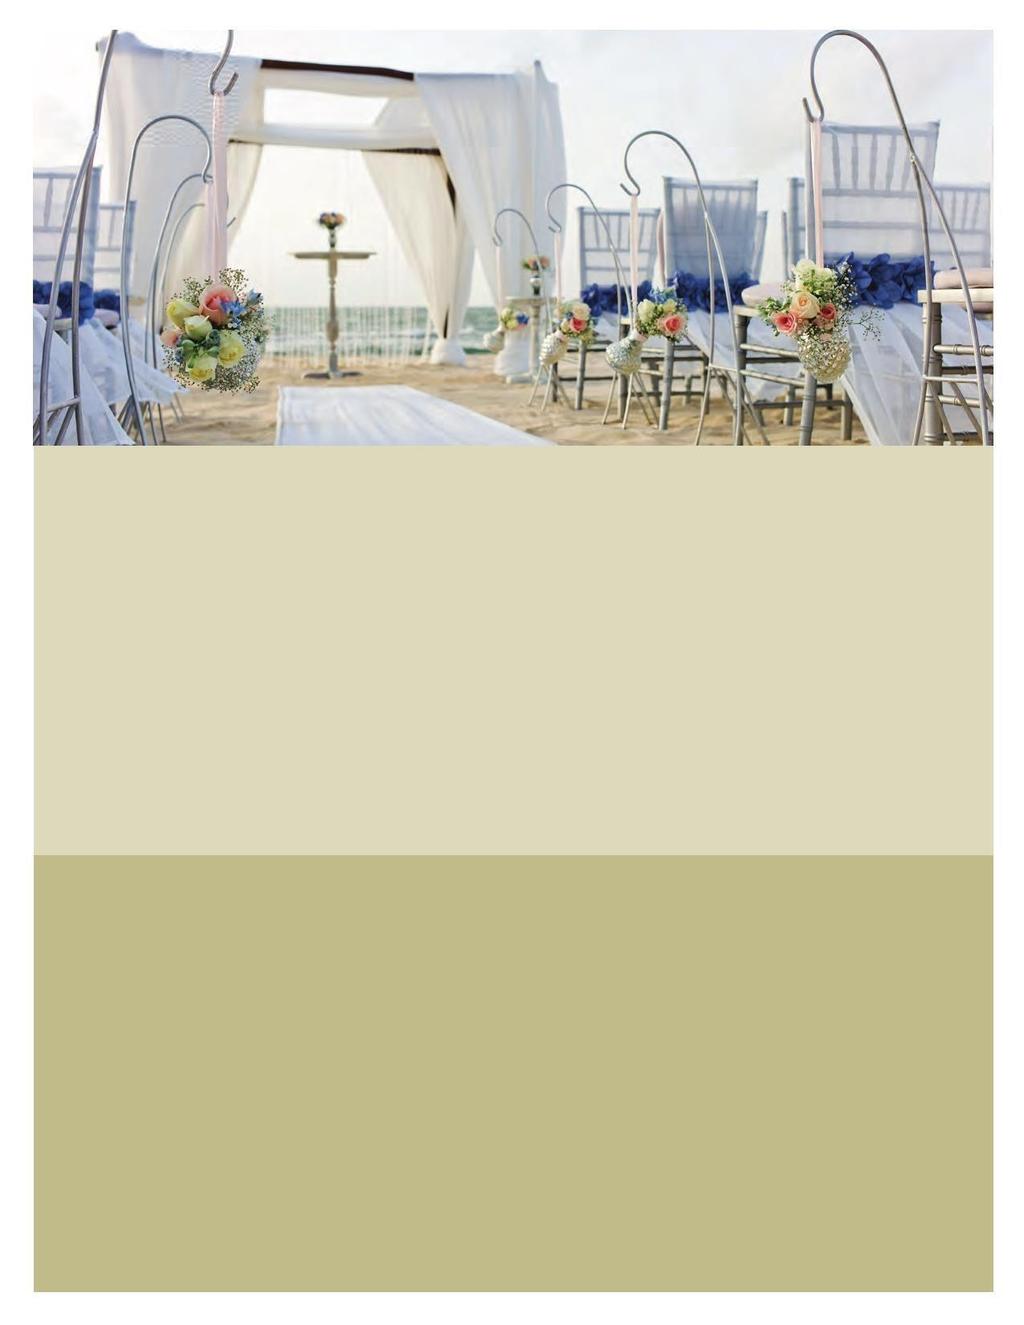 Experiencia Karisma Gourmet Inclusive Azul Villa Carola es ideal para celebraciones de bodas debido a su tamaño, escenarios lujosos y privados, servicios personalizados y proximidad que tiene con